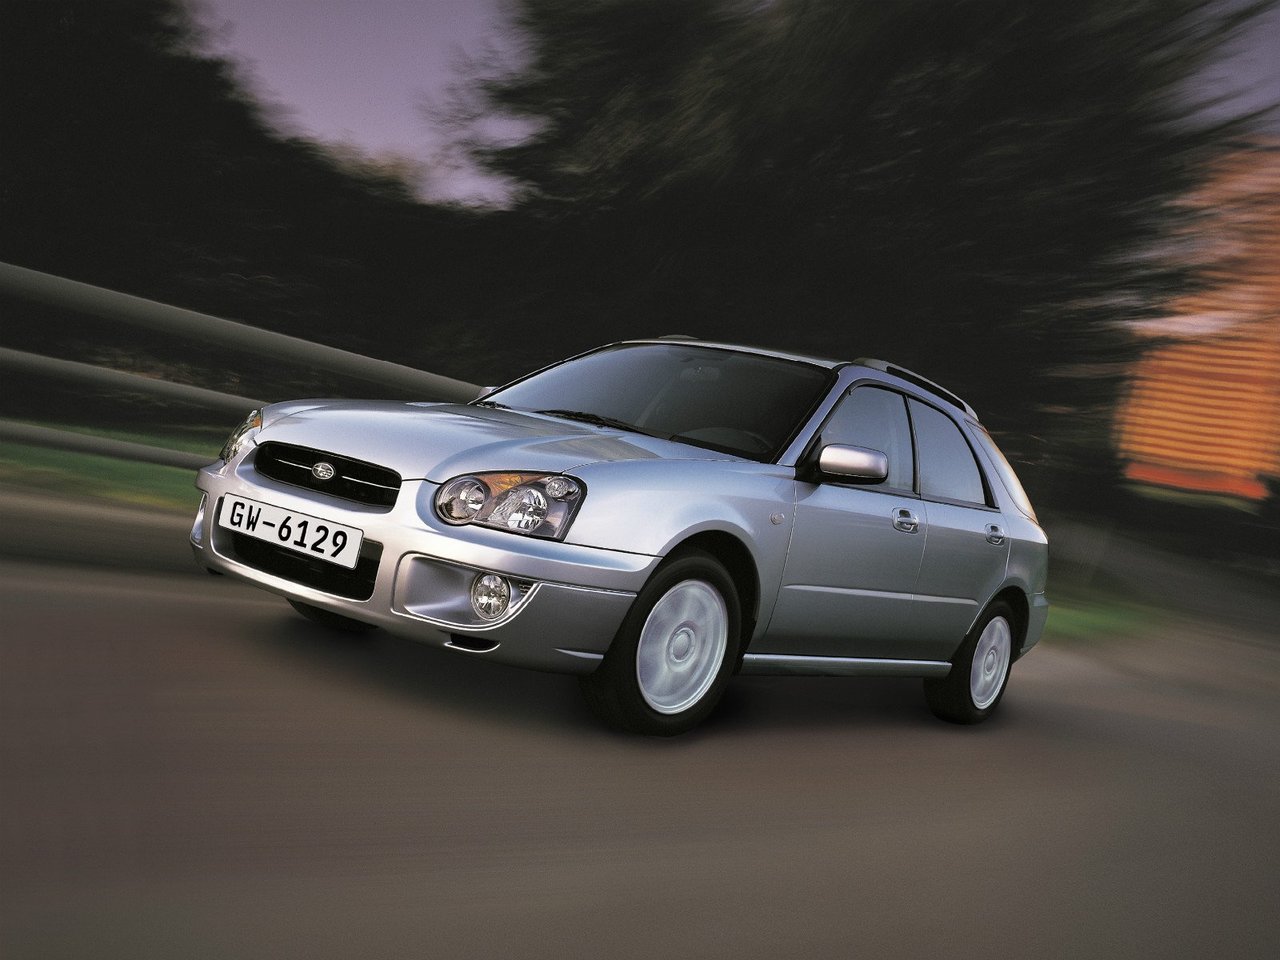 Расход газа восьми комплектаций универсала пять дверей Subaru Impreza. Разница стоимости заправки газом и бензином. Автономный пробег до и после установки ГБО.